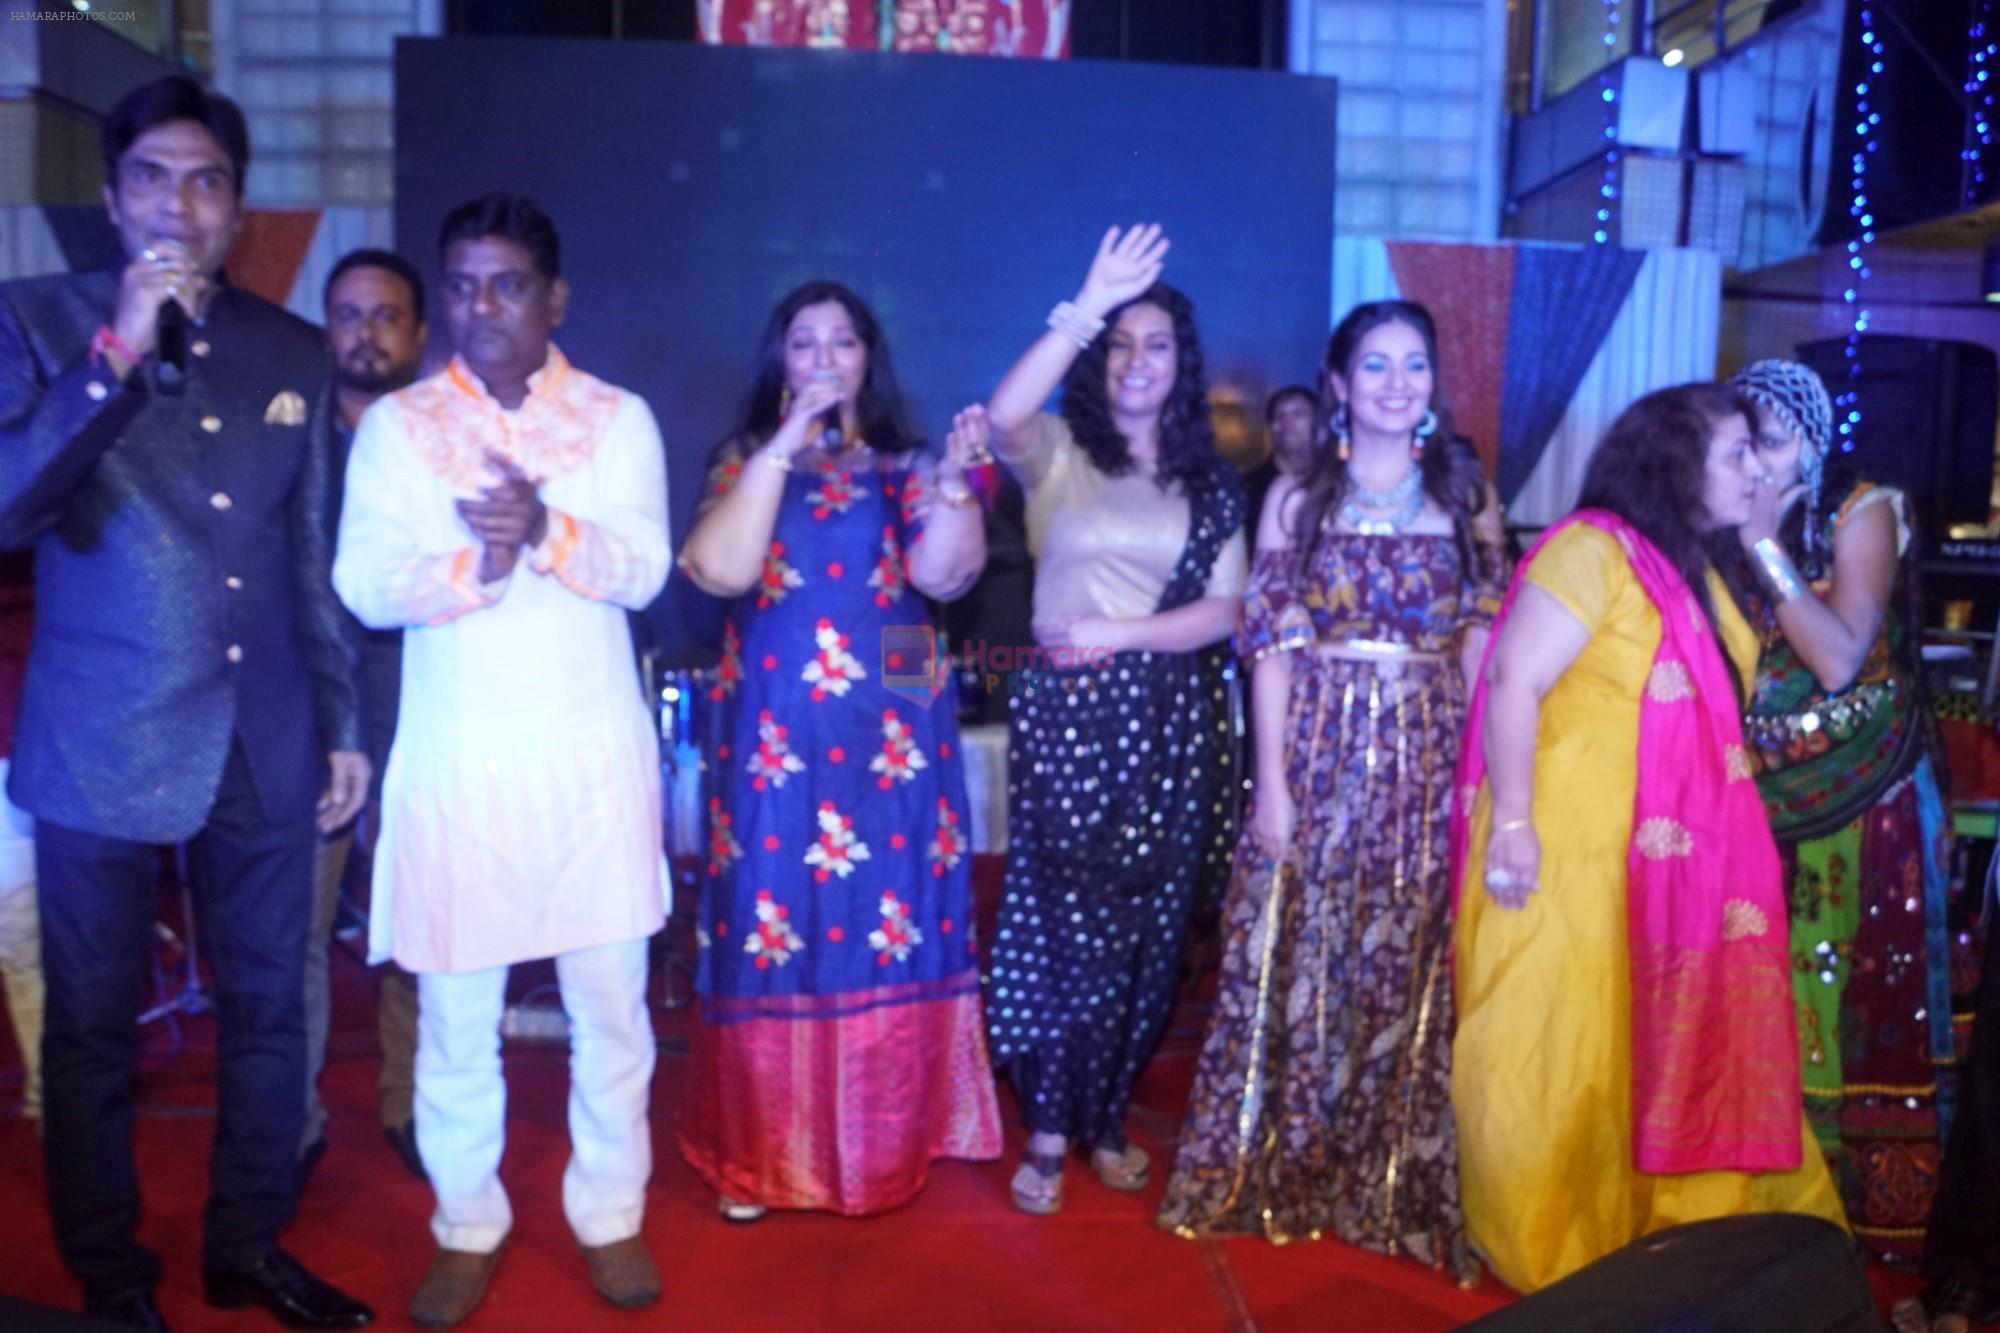 Sucheta Khanna, Mansi Srivastava at Phir Se Sharad Purnima Ni Raat Raghuleela Mall Kandivali Ni Saath Raas Garba on 23rd Oct 2018